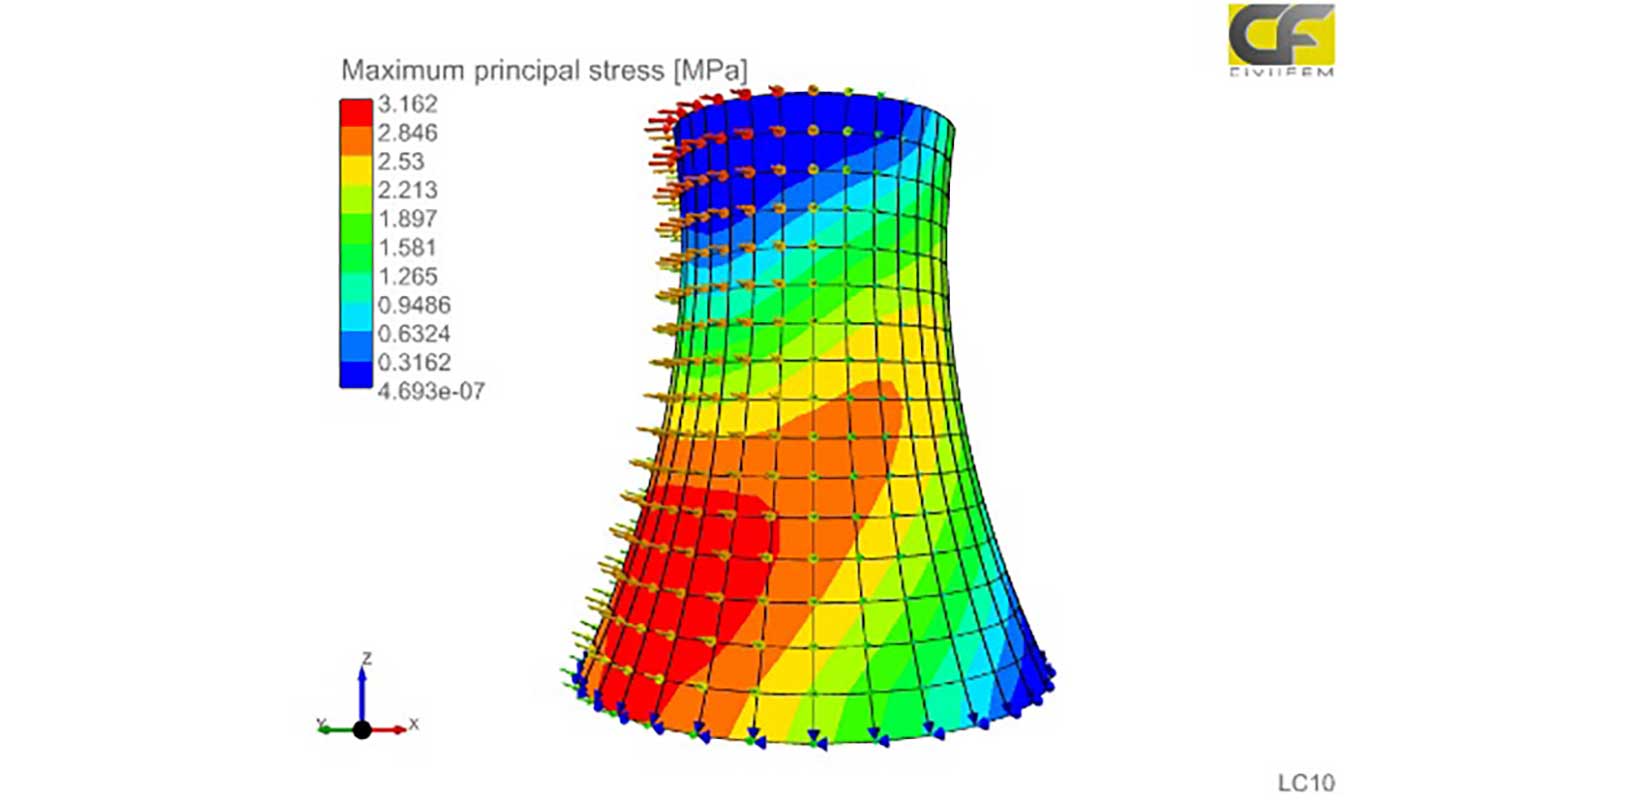 Simulazione multifisica per l'analisi strutturale di centrali nucleari con CivilFEM, powered by Marc